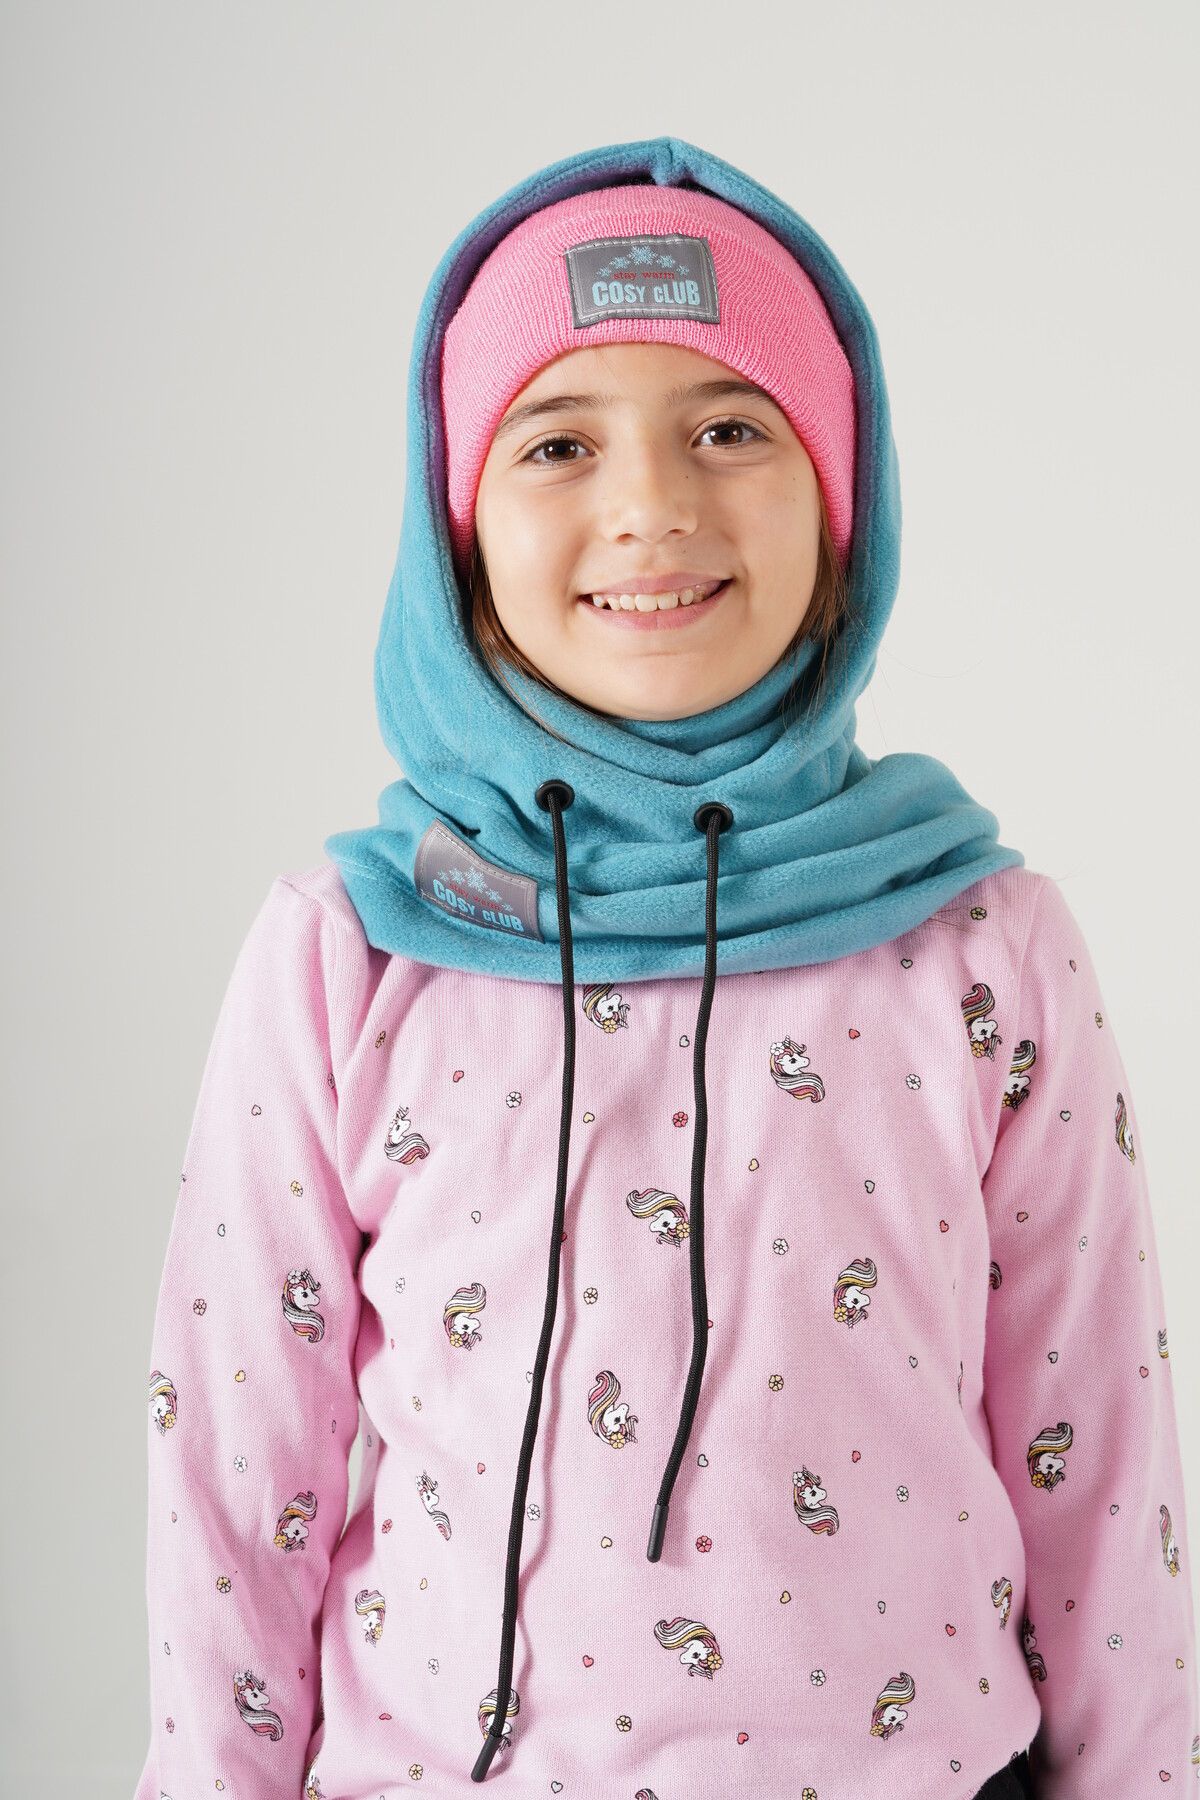 Cosy Club Shop Kız Çocuk Turkuaz Polar Balaklava Kar Maskesi Boyunluk Şapka Atkı Bir Arada